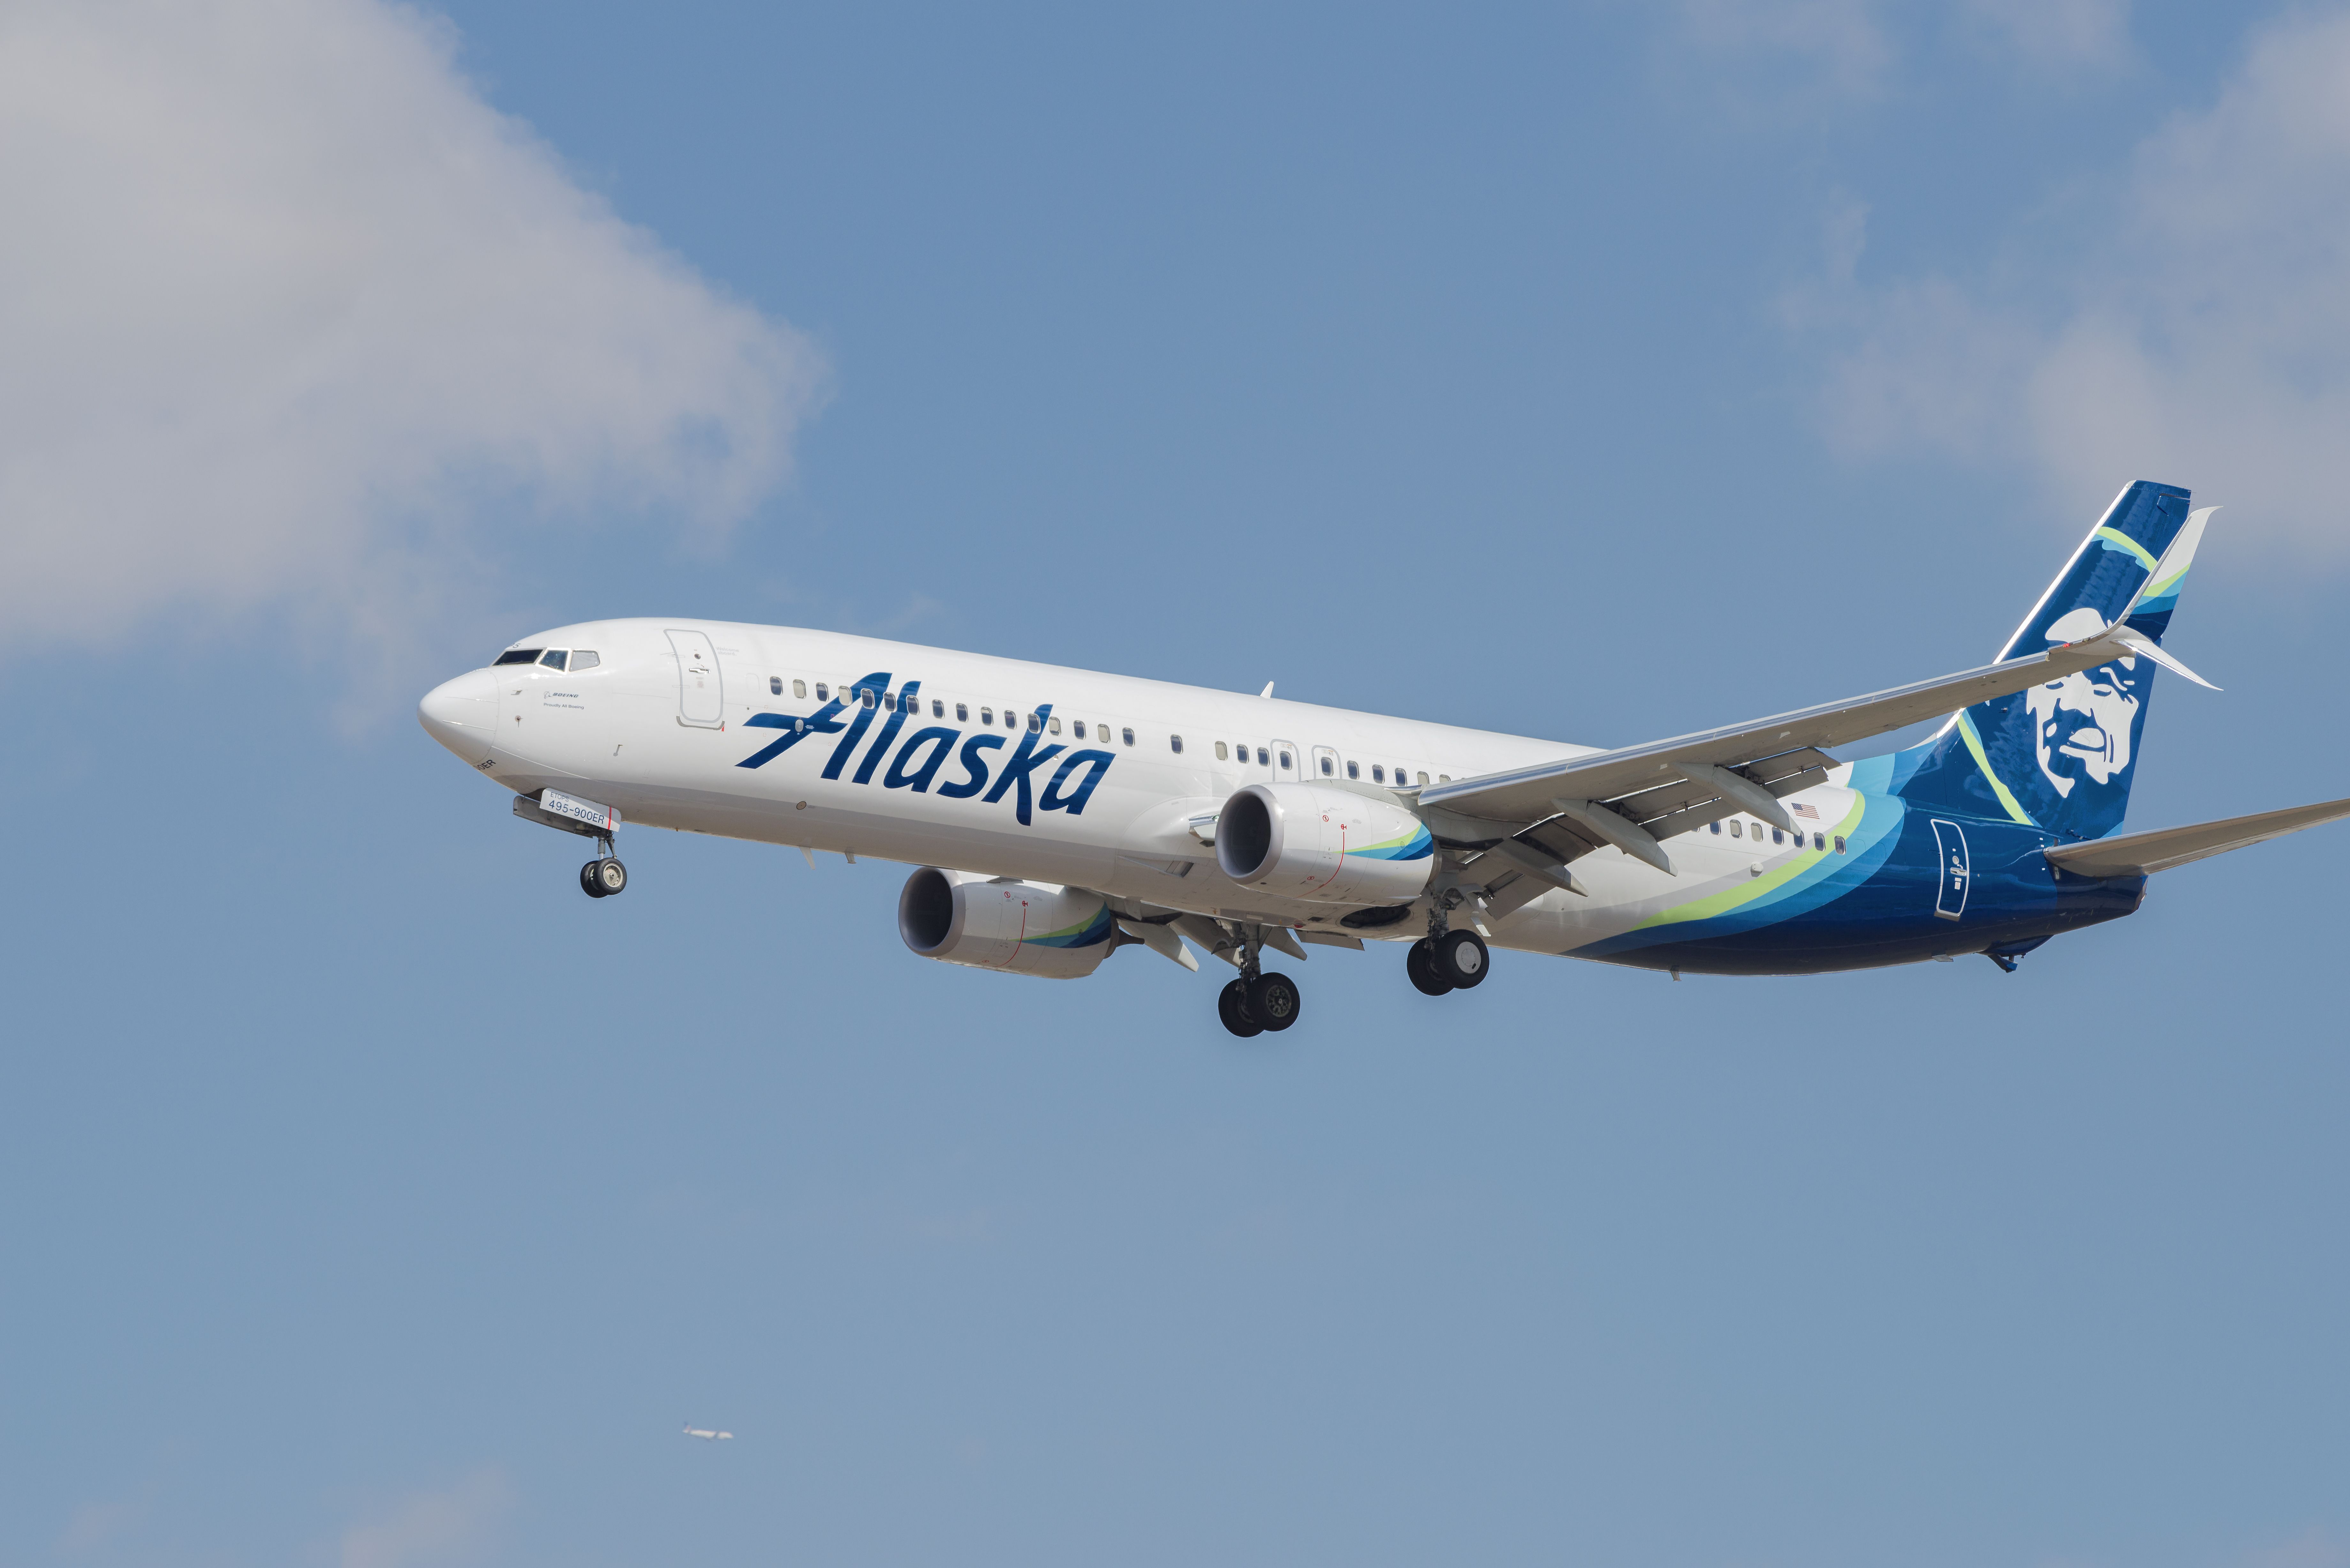 Alaska Airlines Boeing 737-900ER landing at LAX